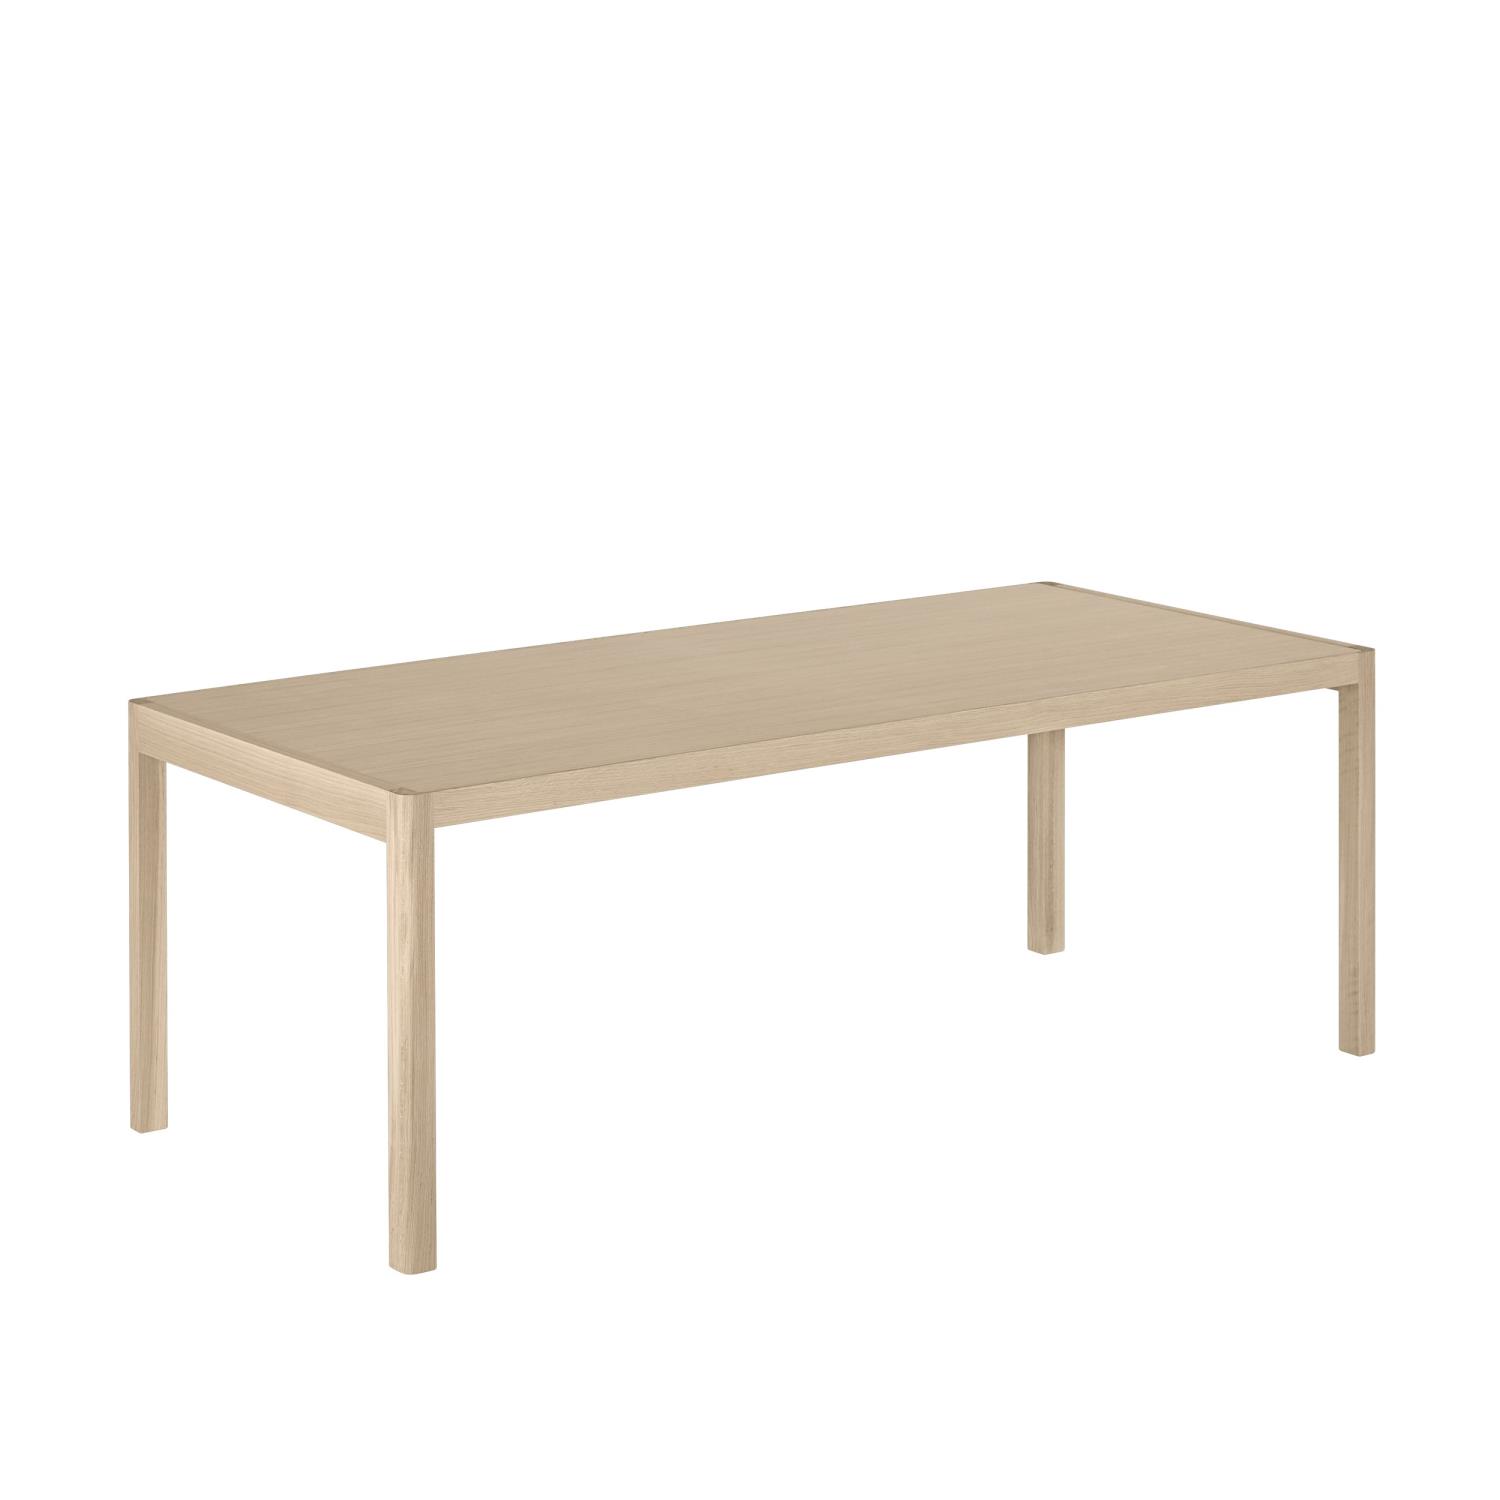 Muuto - Workshop Table - 200x92 - Oak Veneer and Oak